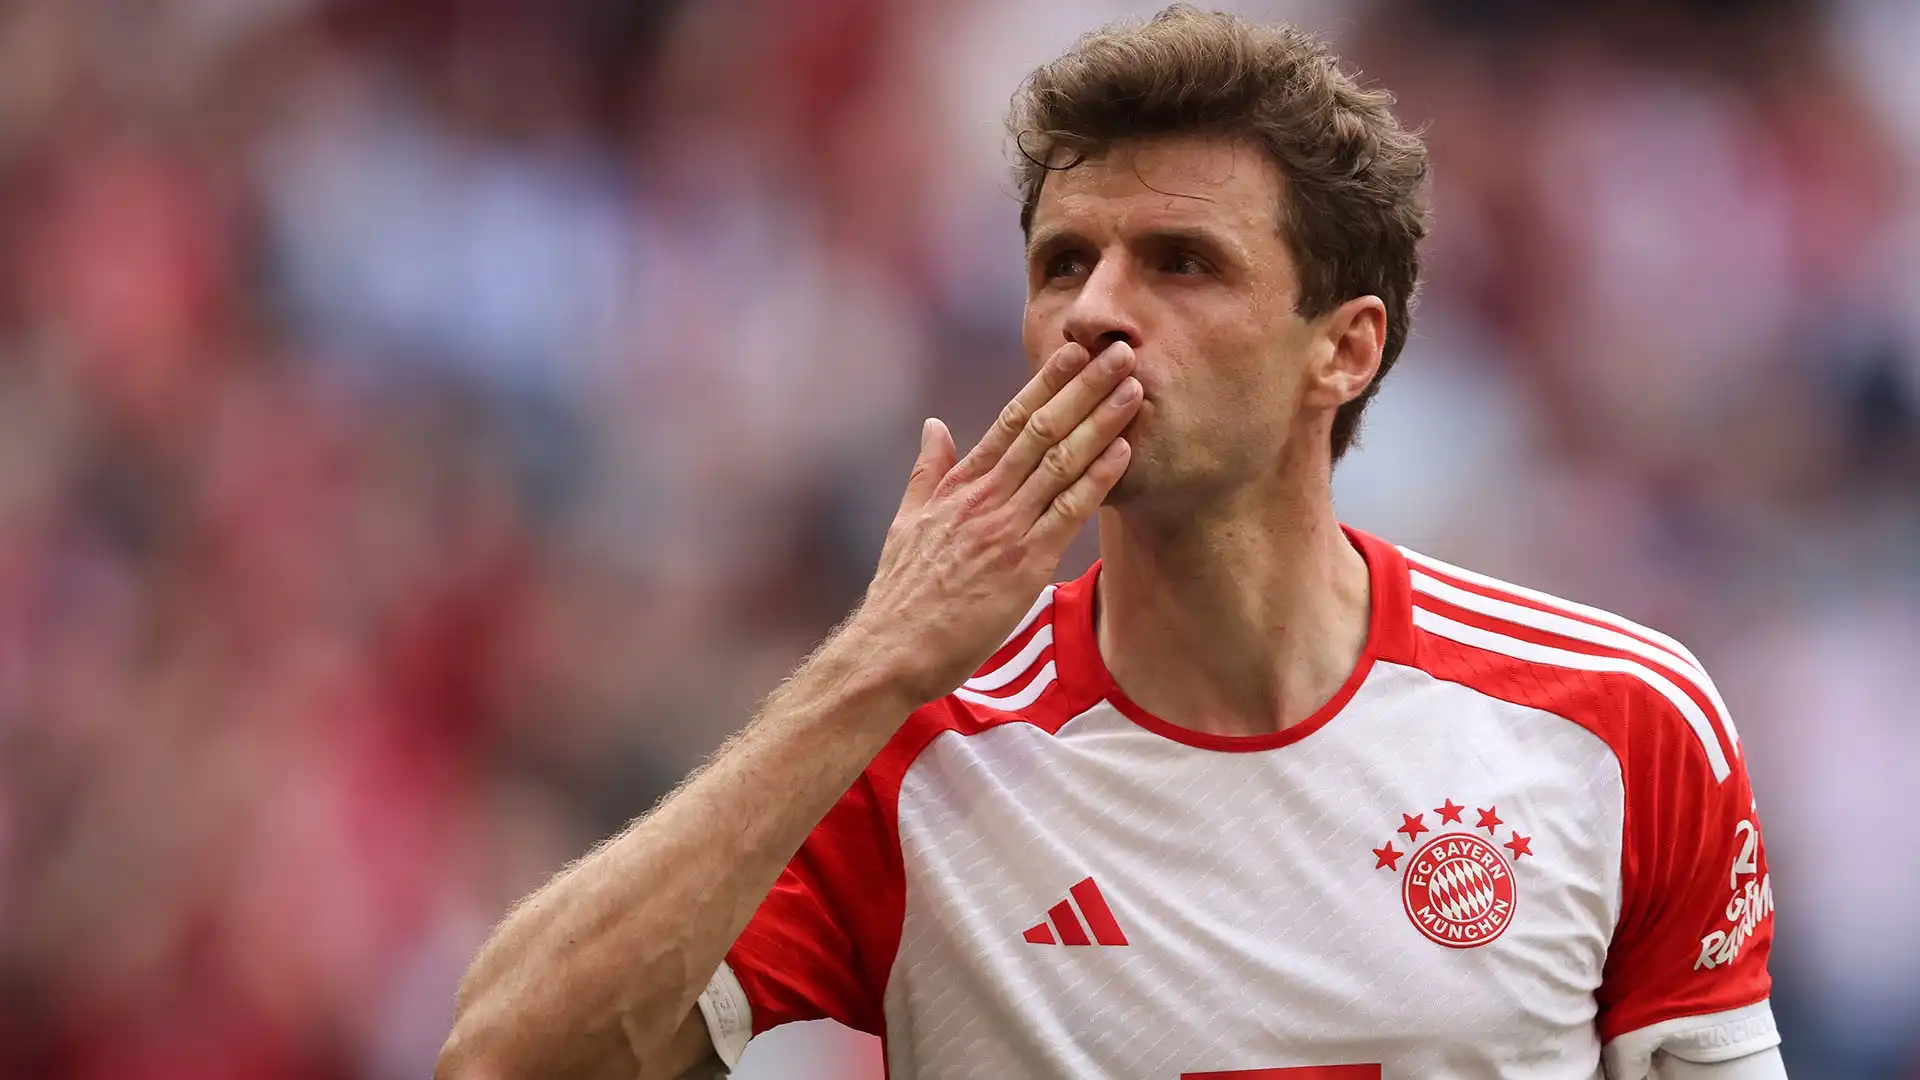 4) Thomas Müller (calcio): 20,5 milioni di euro all'anno. Il capitano e leader del Bayern ha giocato oltre 700 partite con i bavaresi